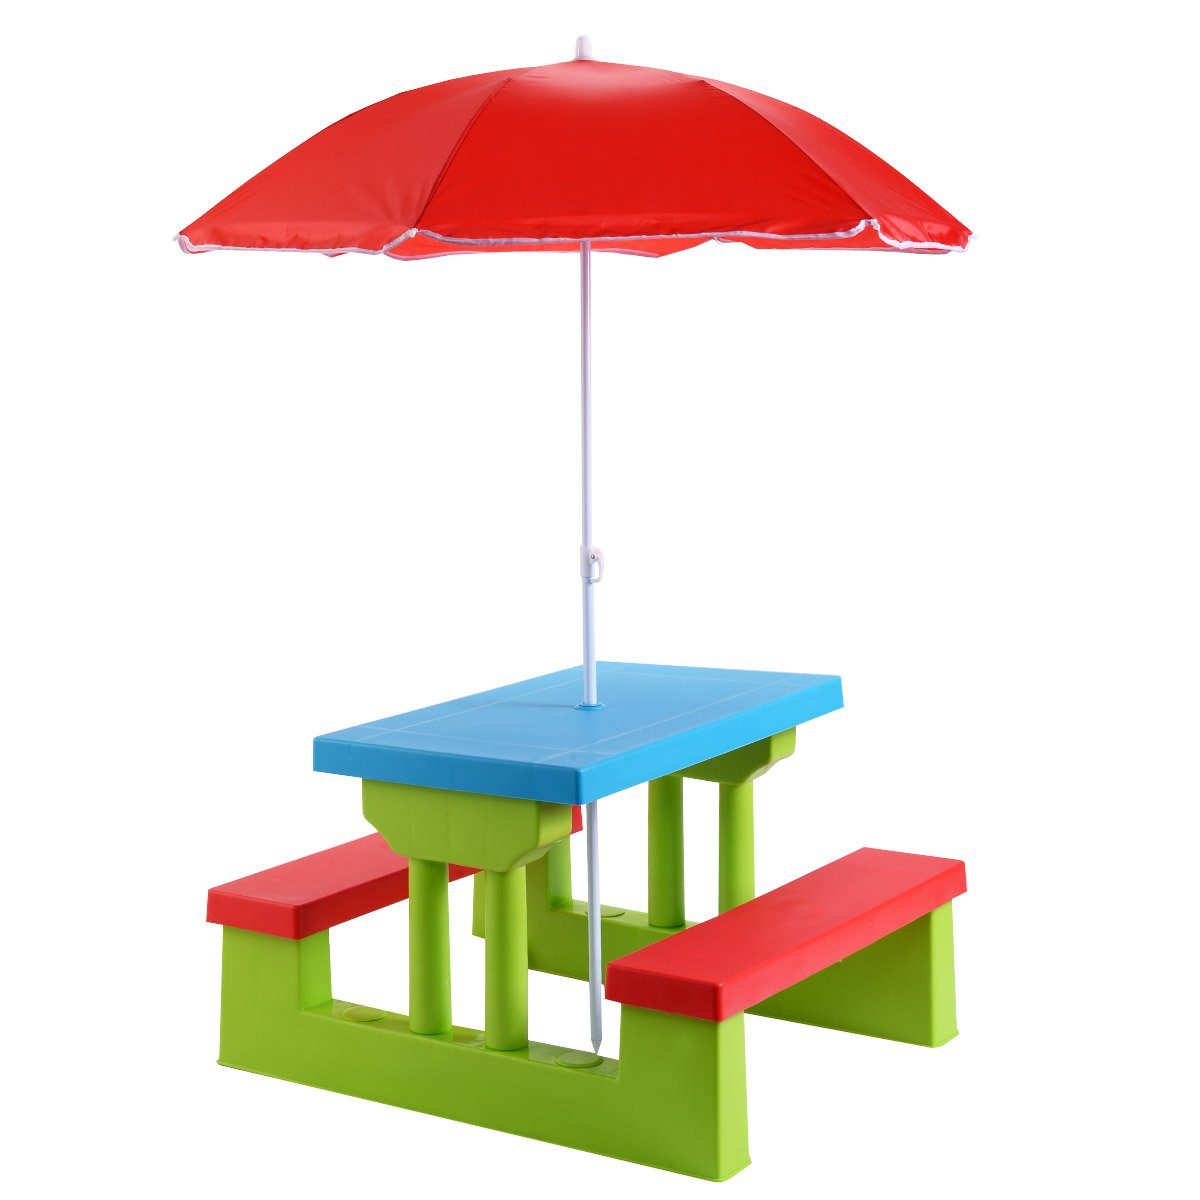 COSTWAY Kindersitzgruppe Sitzgarnitur, Kindertisch, mit Sonnenschirm Rot+Blau+Grün